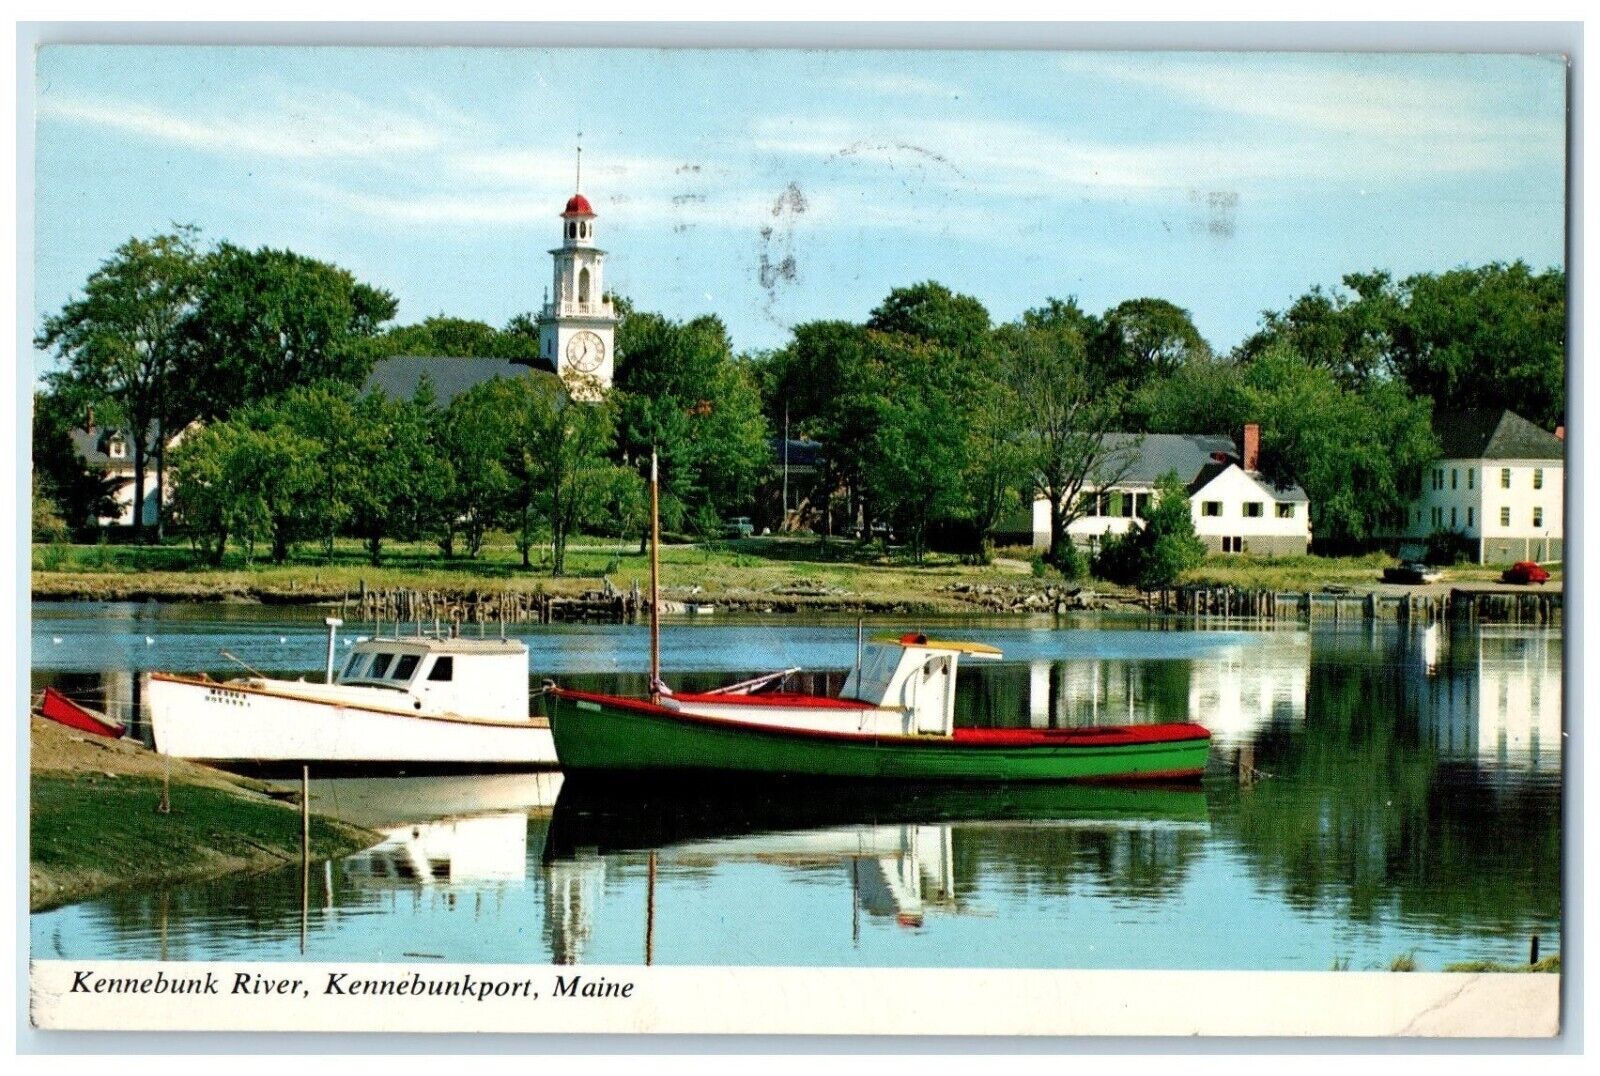 1971 Kennebunk River Yacht Boat Kennebunkport Maine ME Posted Vintage Postcard